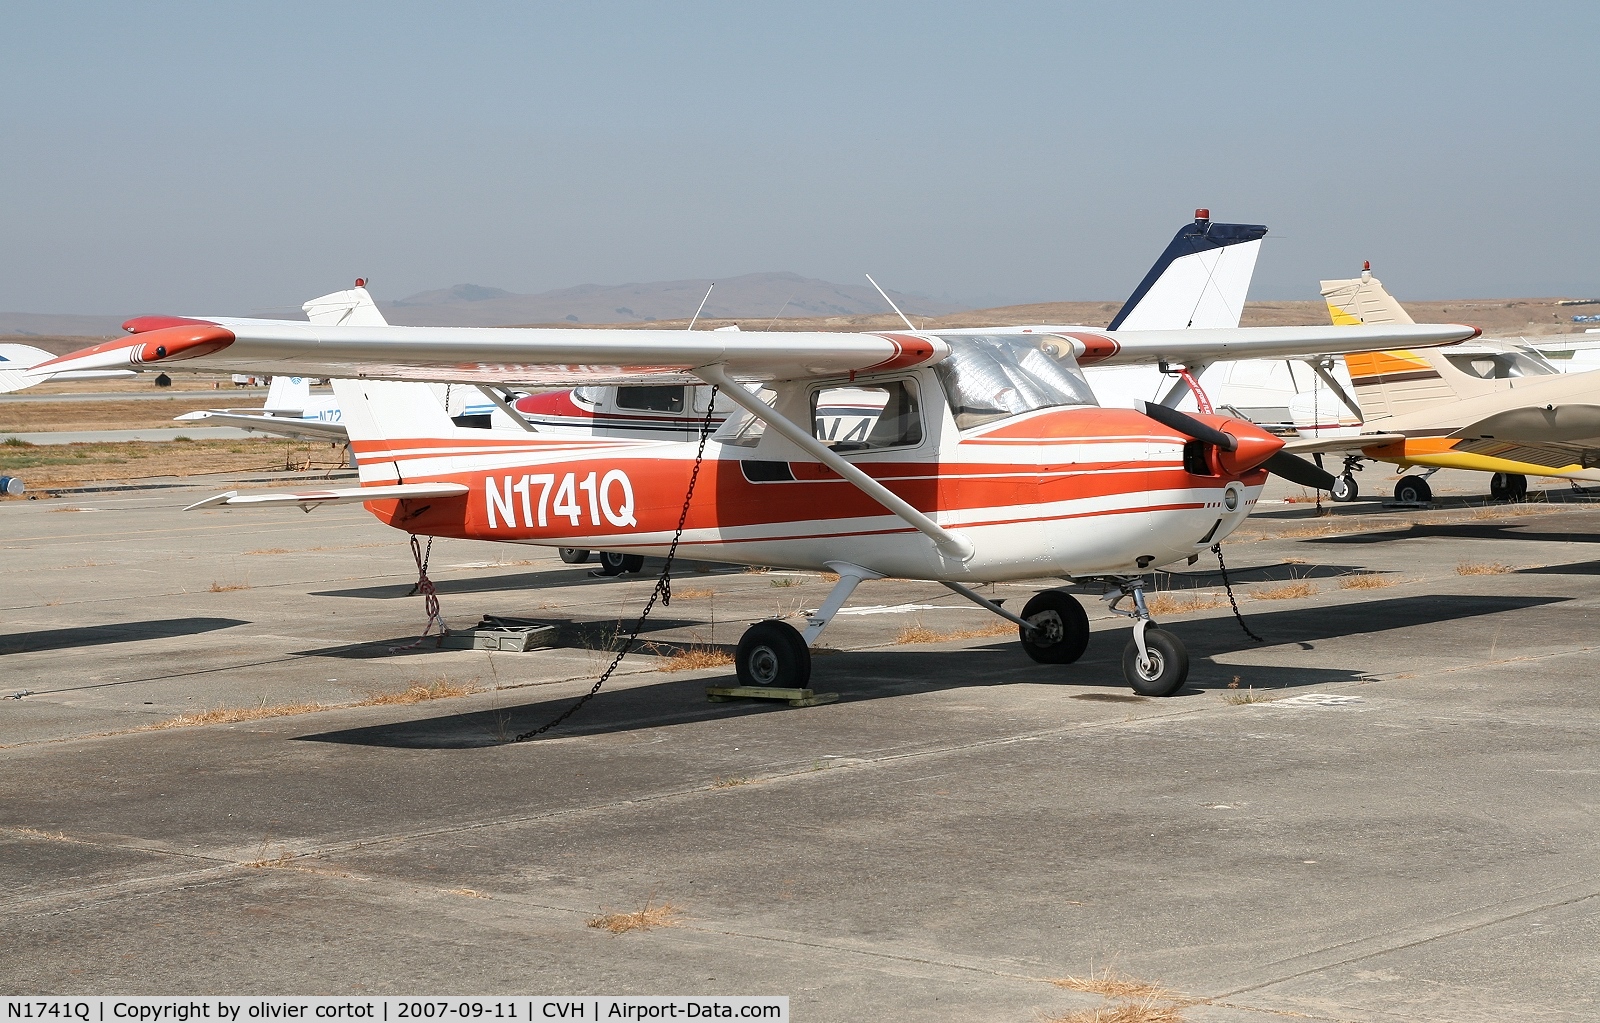 N1741Q, 1971 Cessna 150L C/N 15073041, Hollister airport, 2007